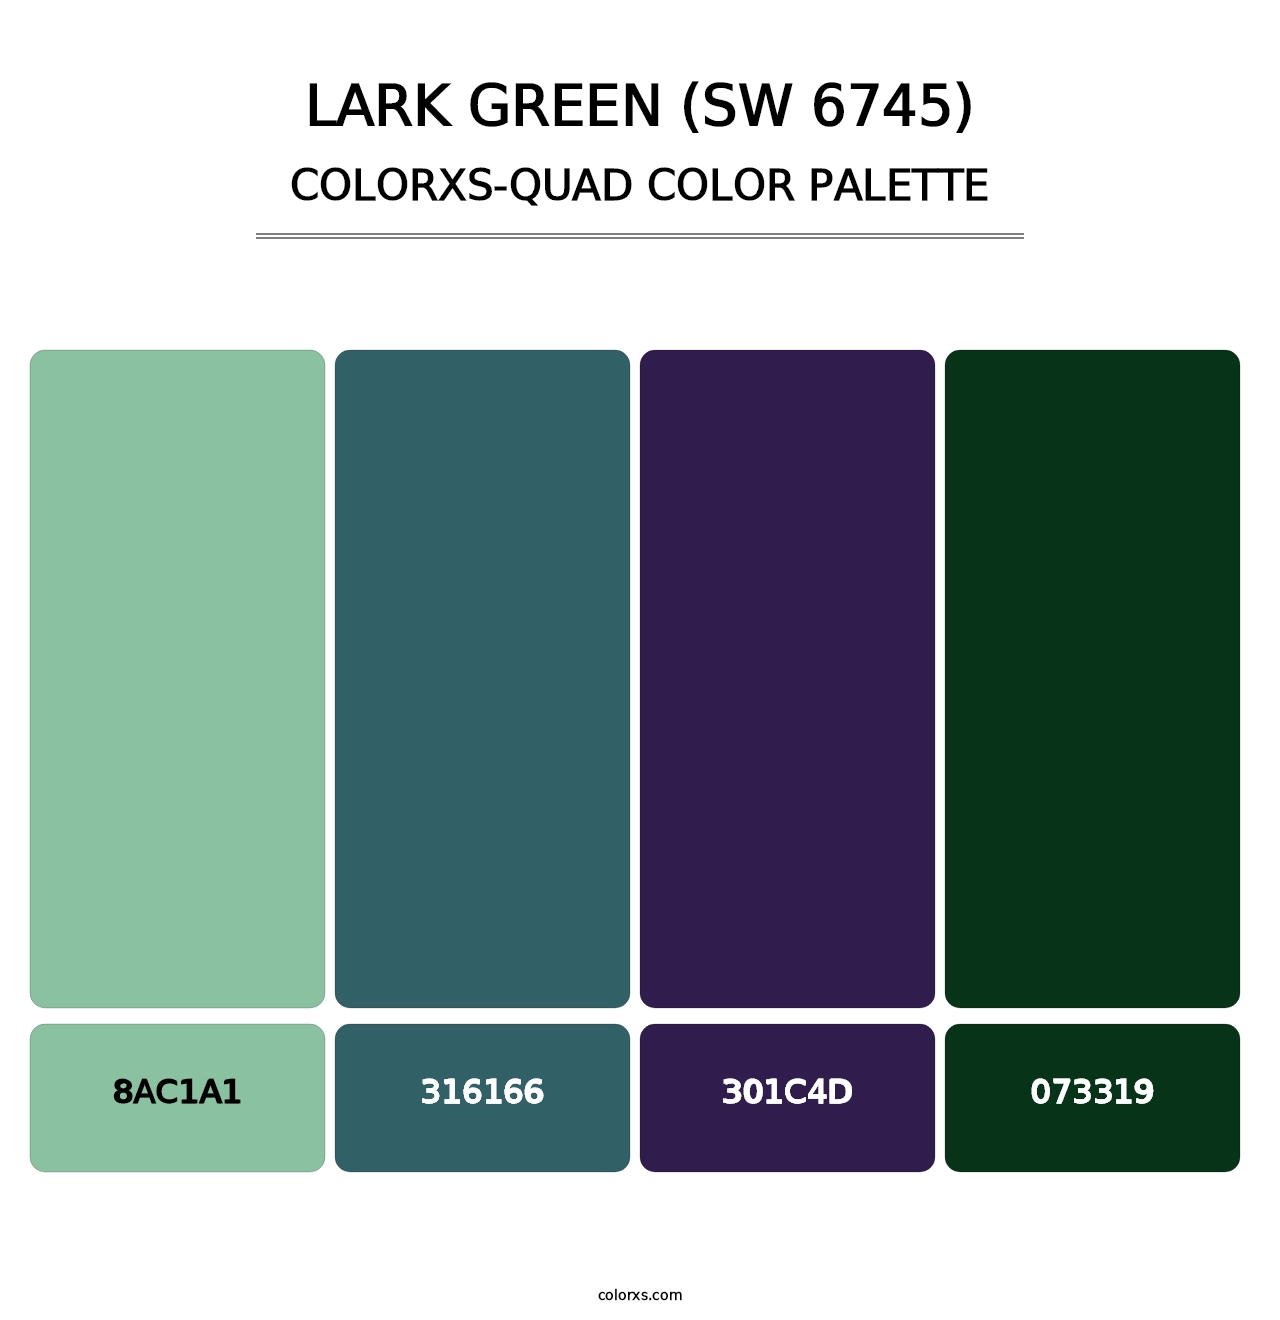 Lark Green (SW 6745) - Colorxs Quad Palette